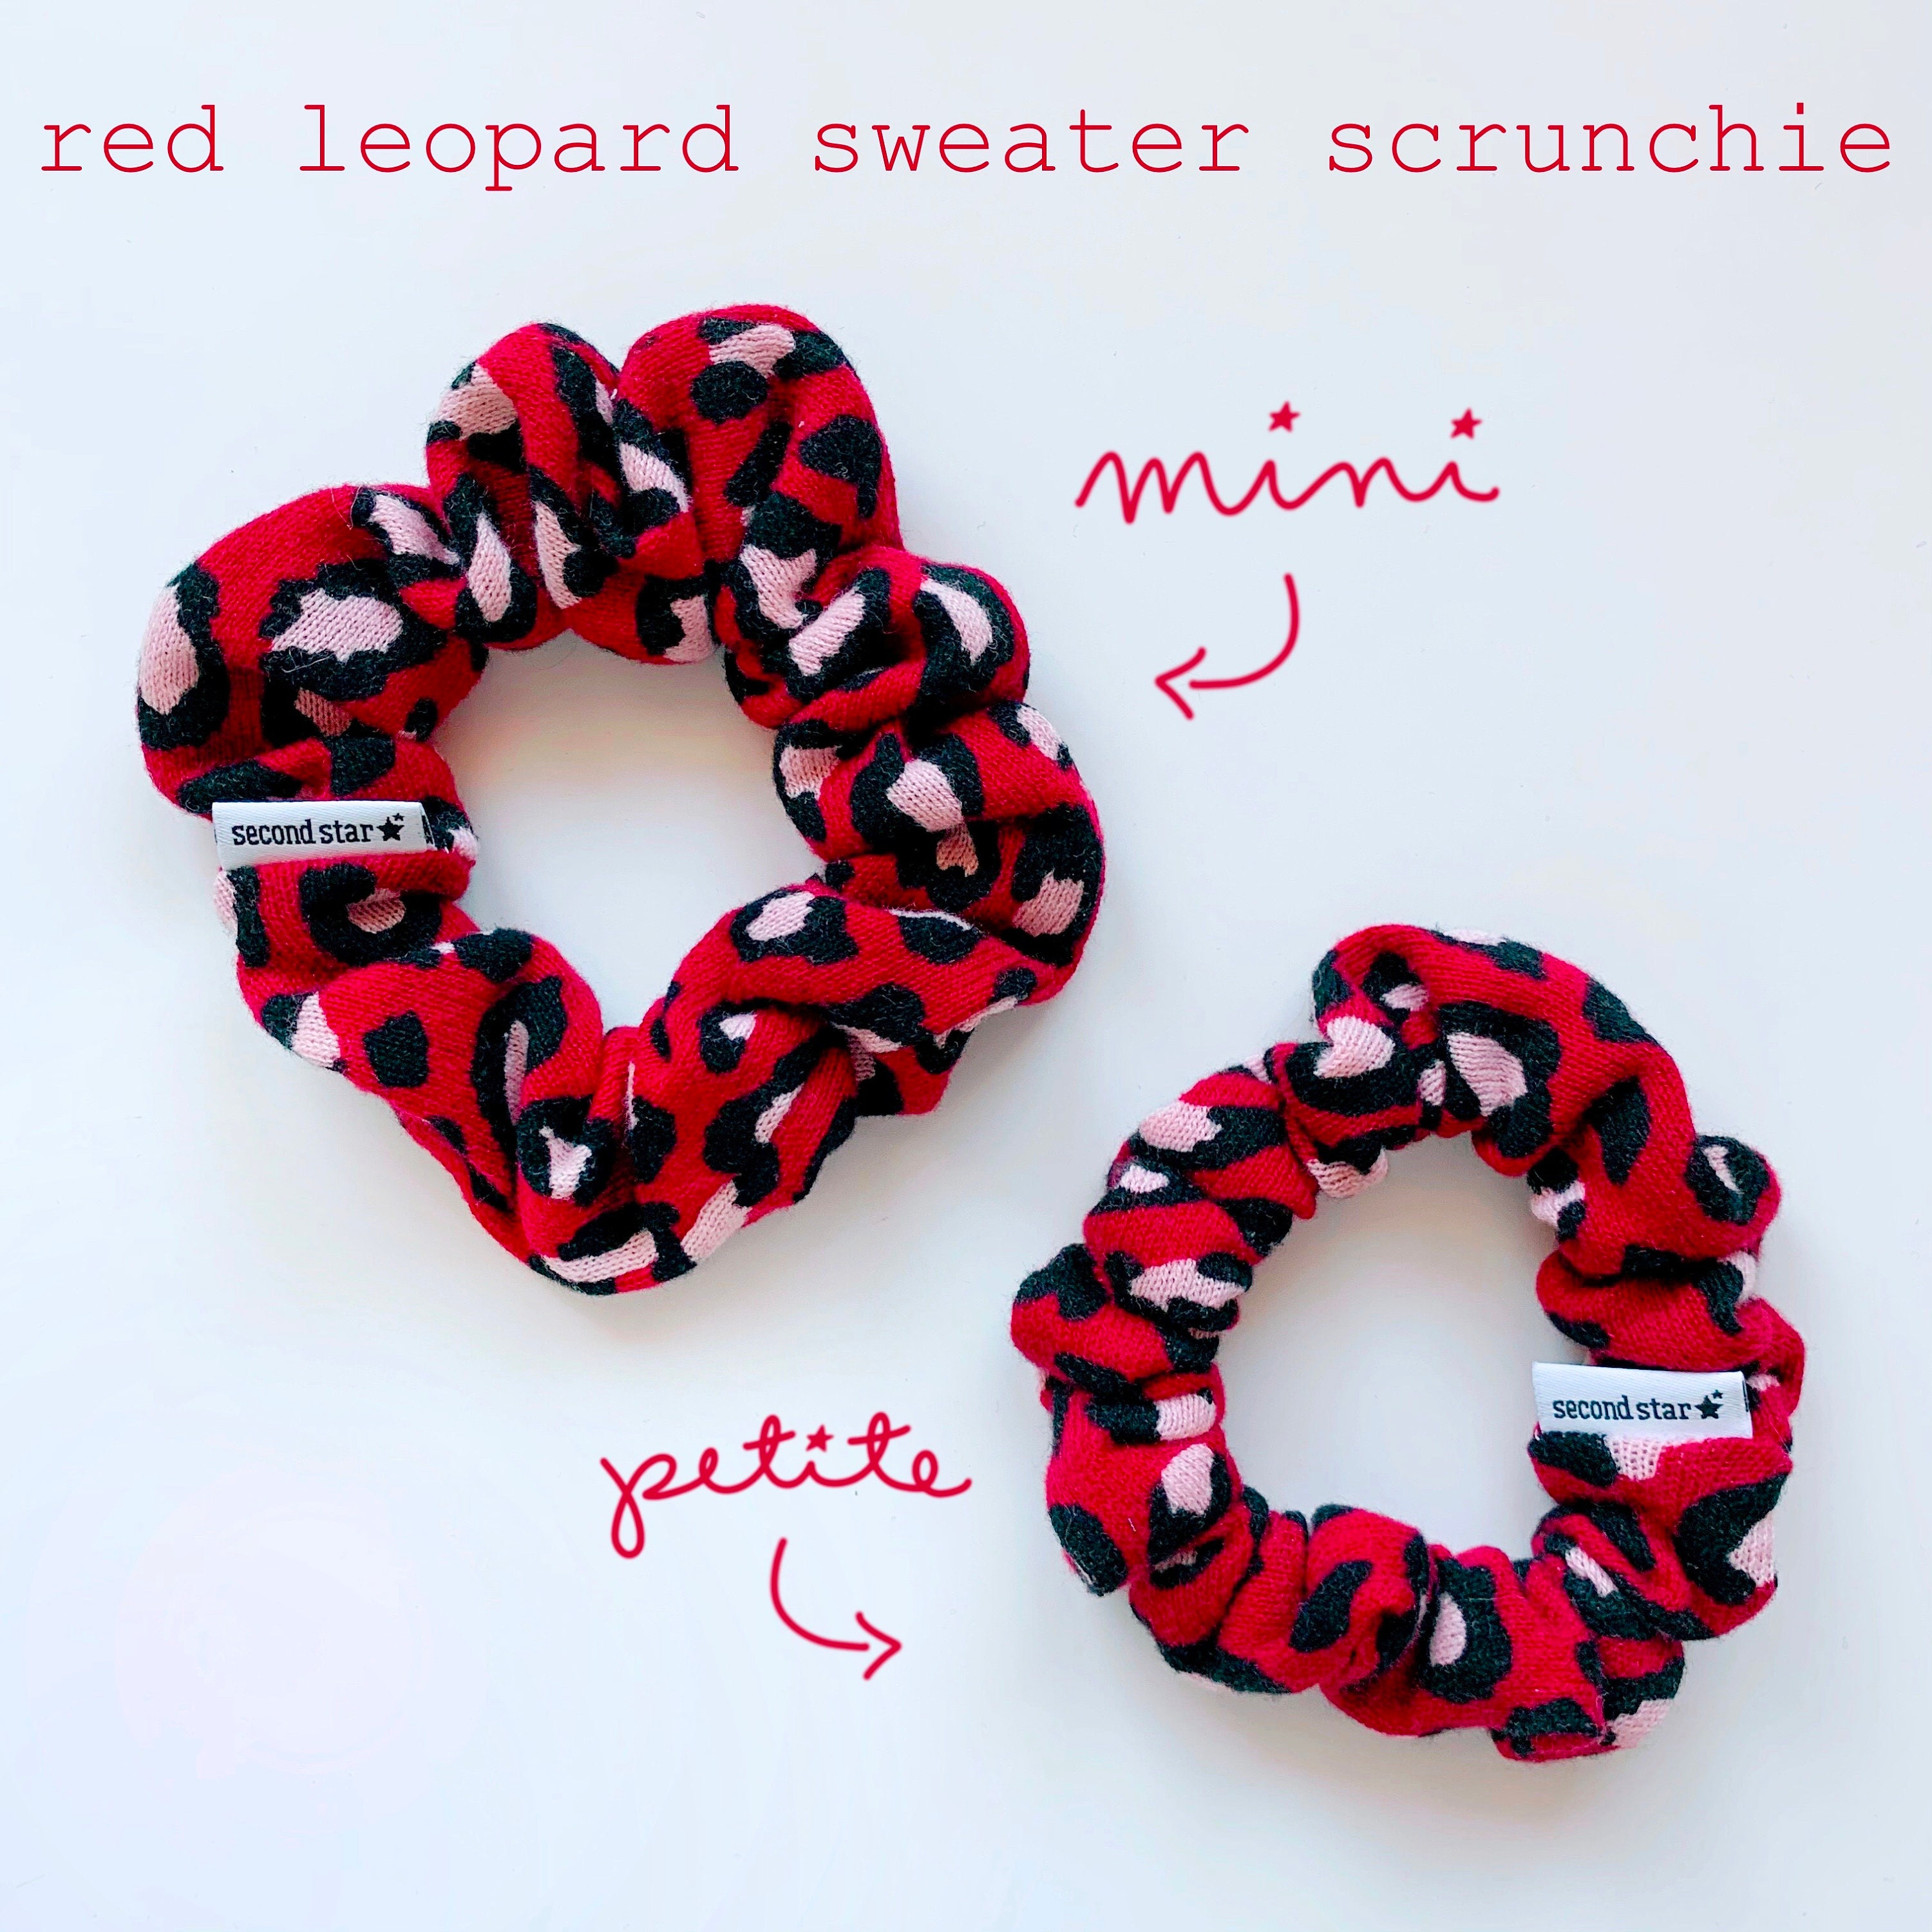 Red Leopard Sweater Scrunchie / Red Leopard Print Scrunchie / Red Cheetah  Print Scrunchie / Animal Print Scrunchie / Sweater Scrunchie -  Canada